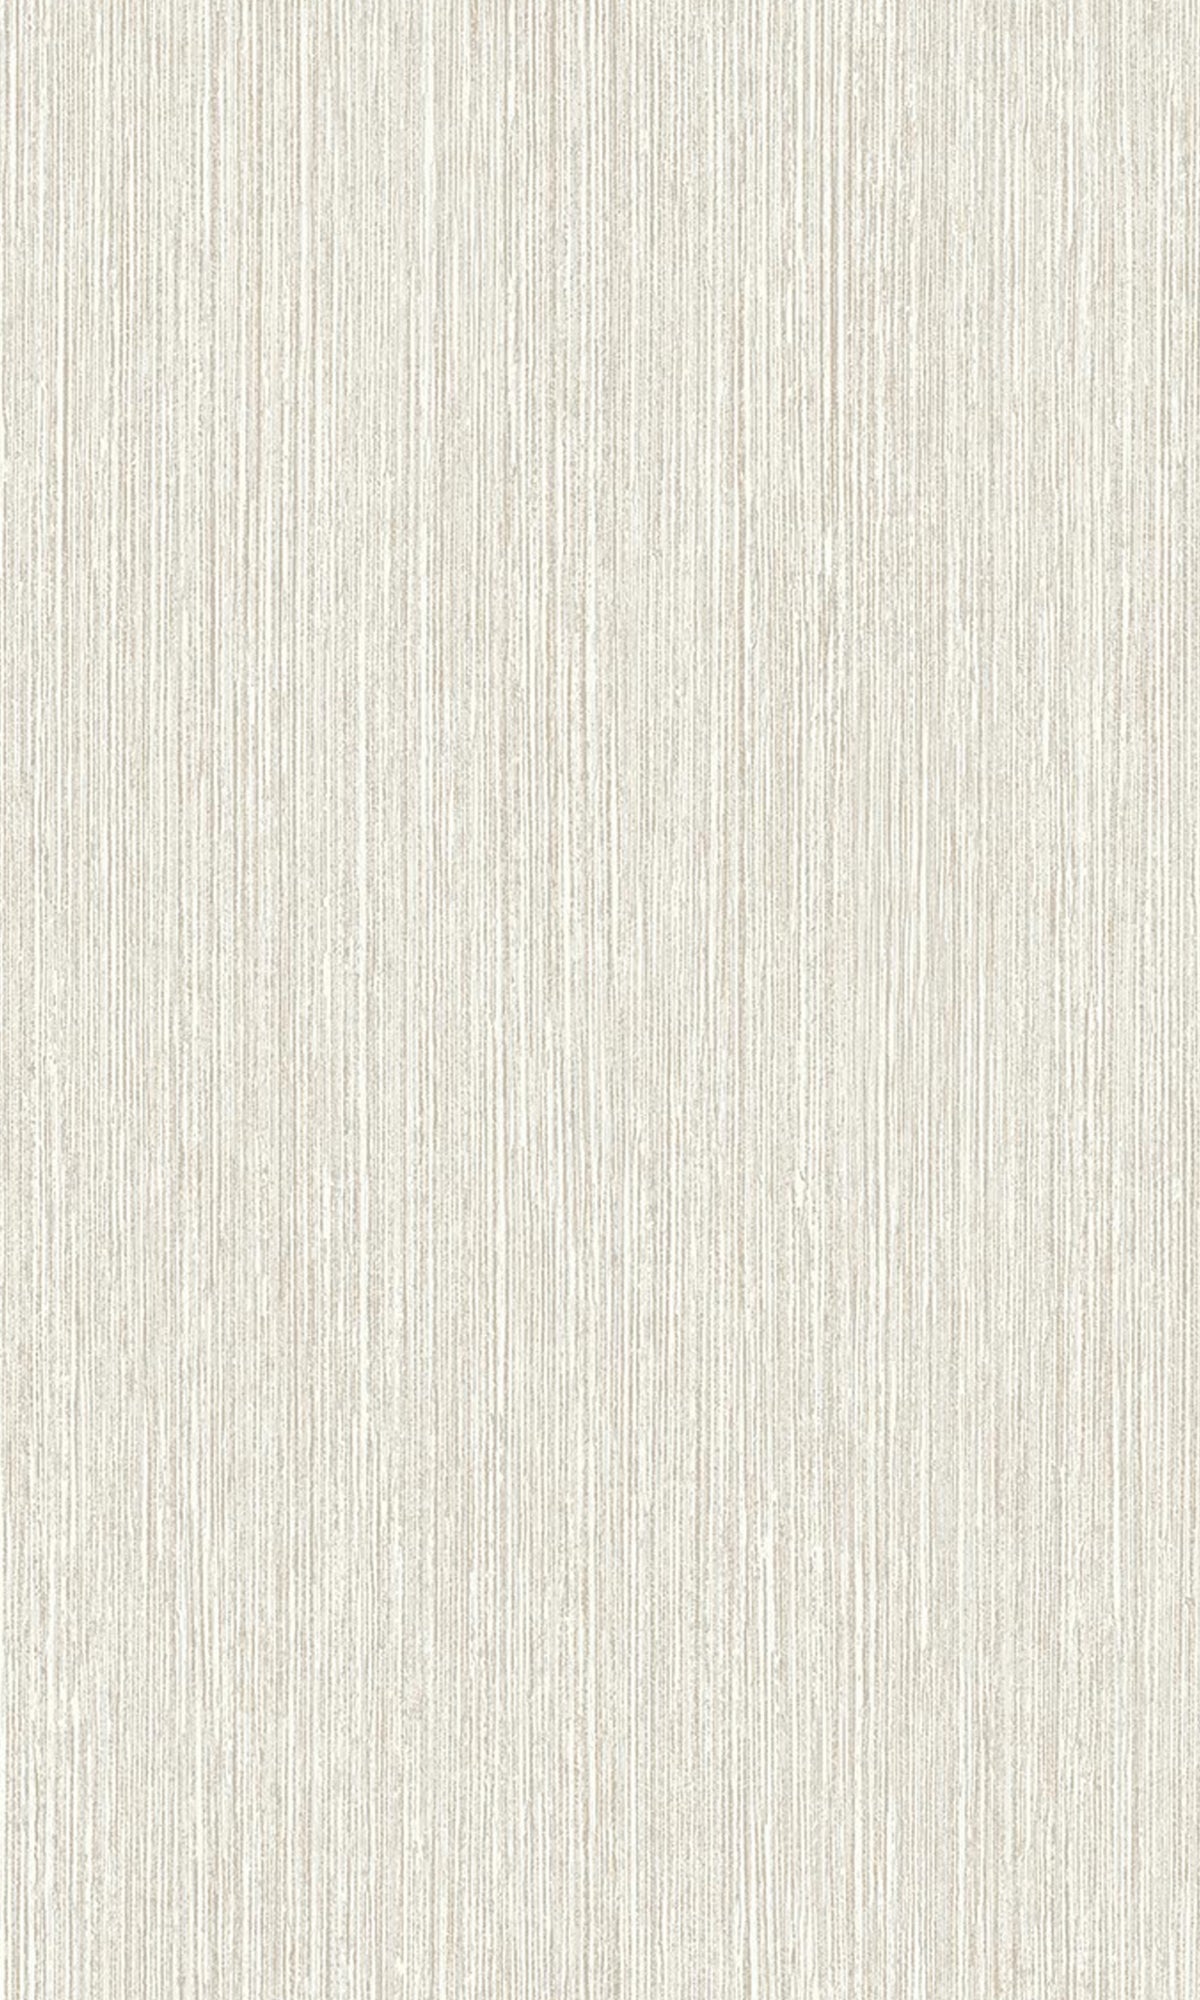 Light Grey Vertical Plain Textured Wallpaper R9246